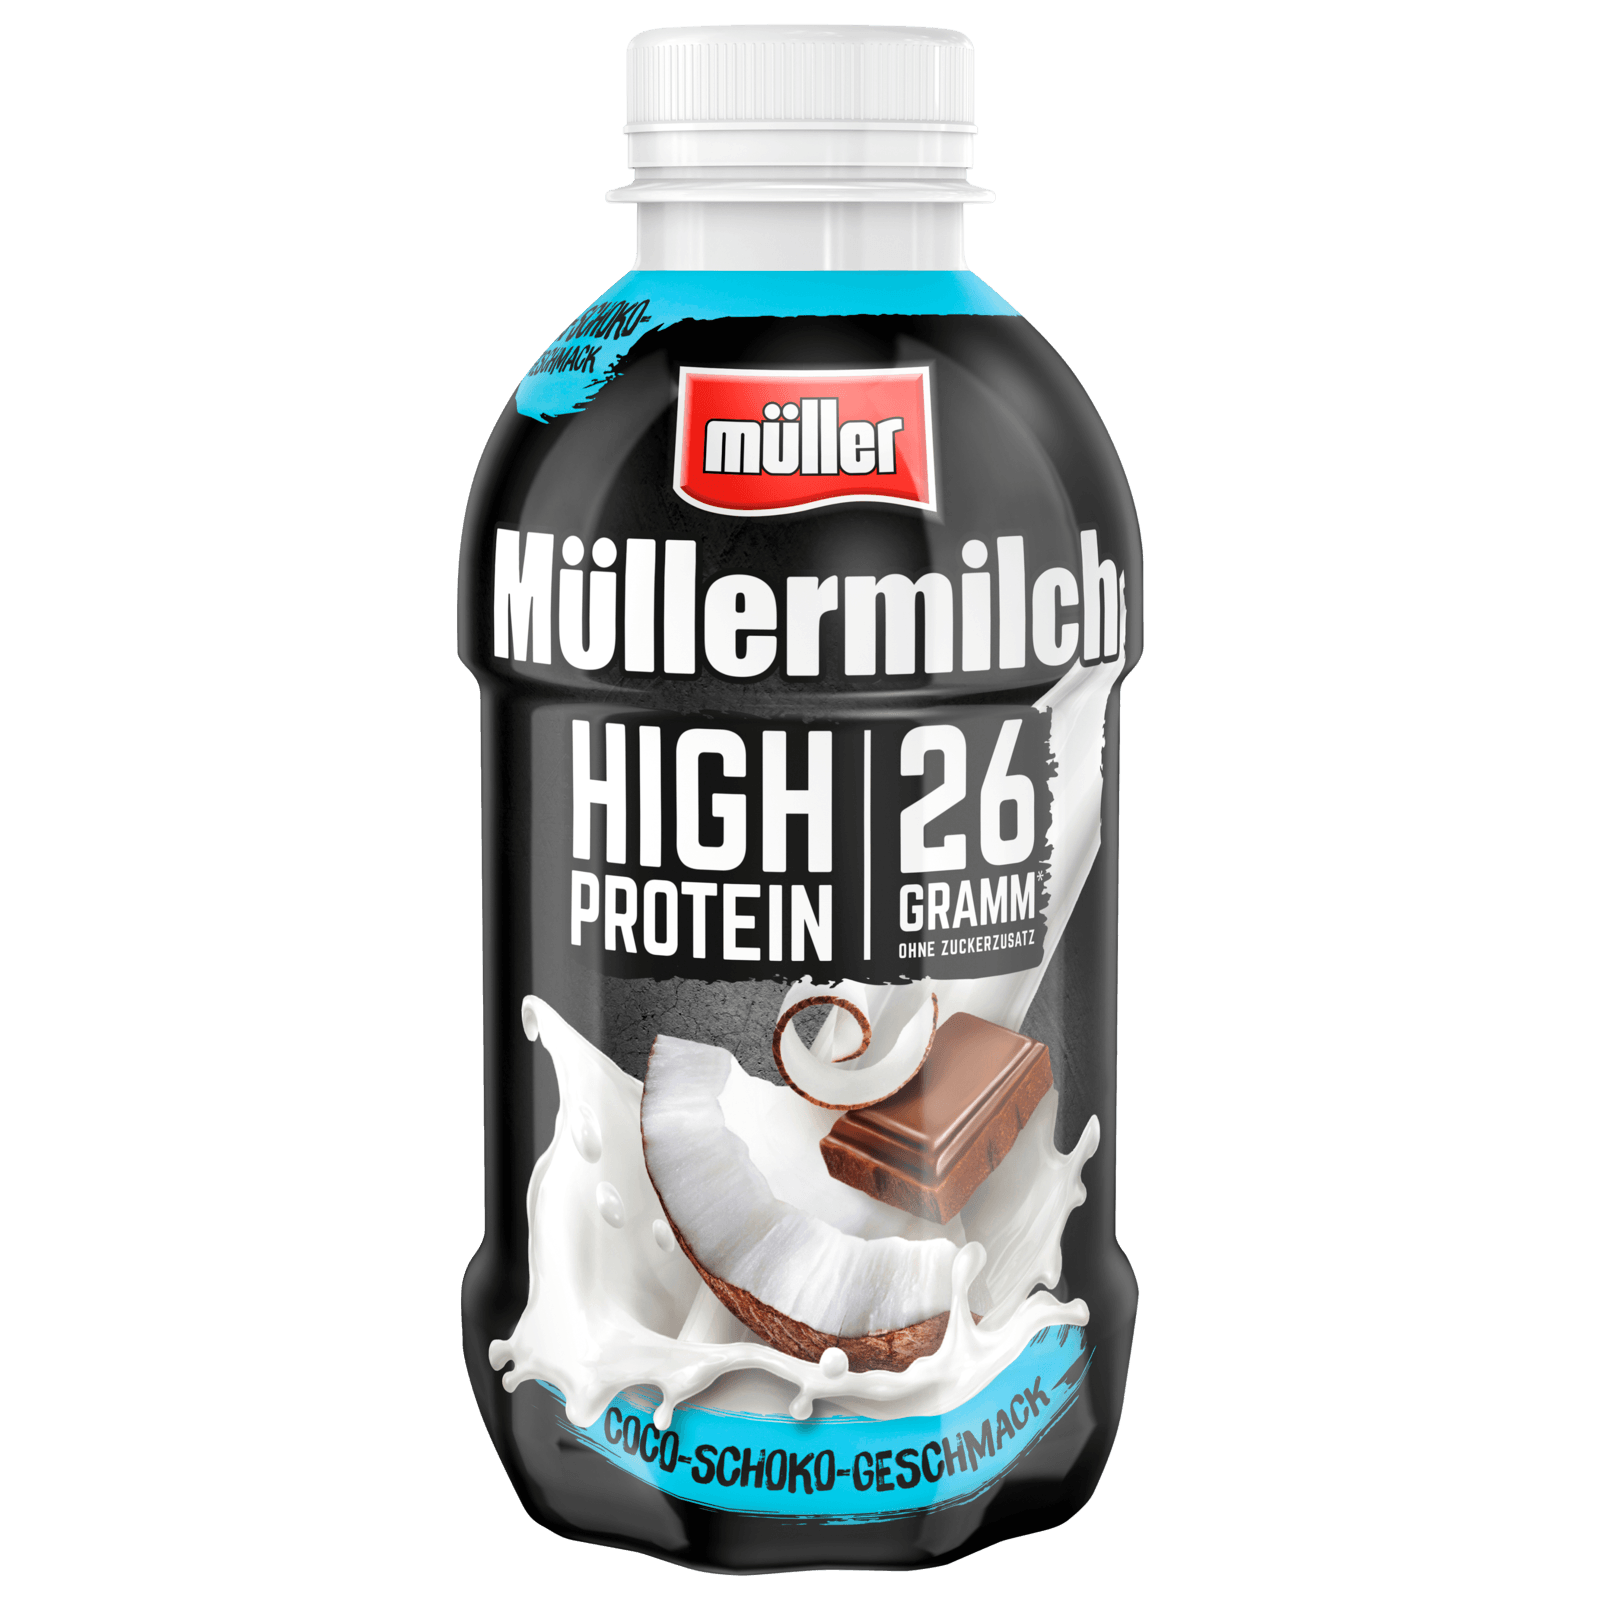 Müller Müllermilch High Protein Coco-Schoko 400ml bei REWE online bestellen!